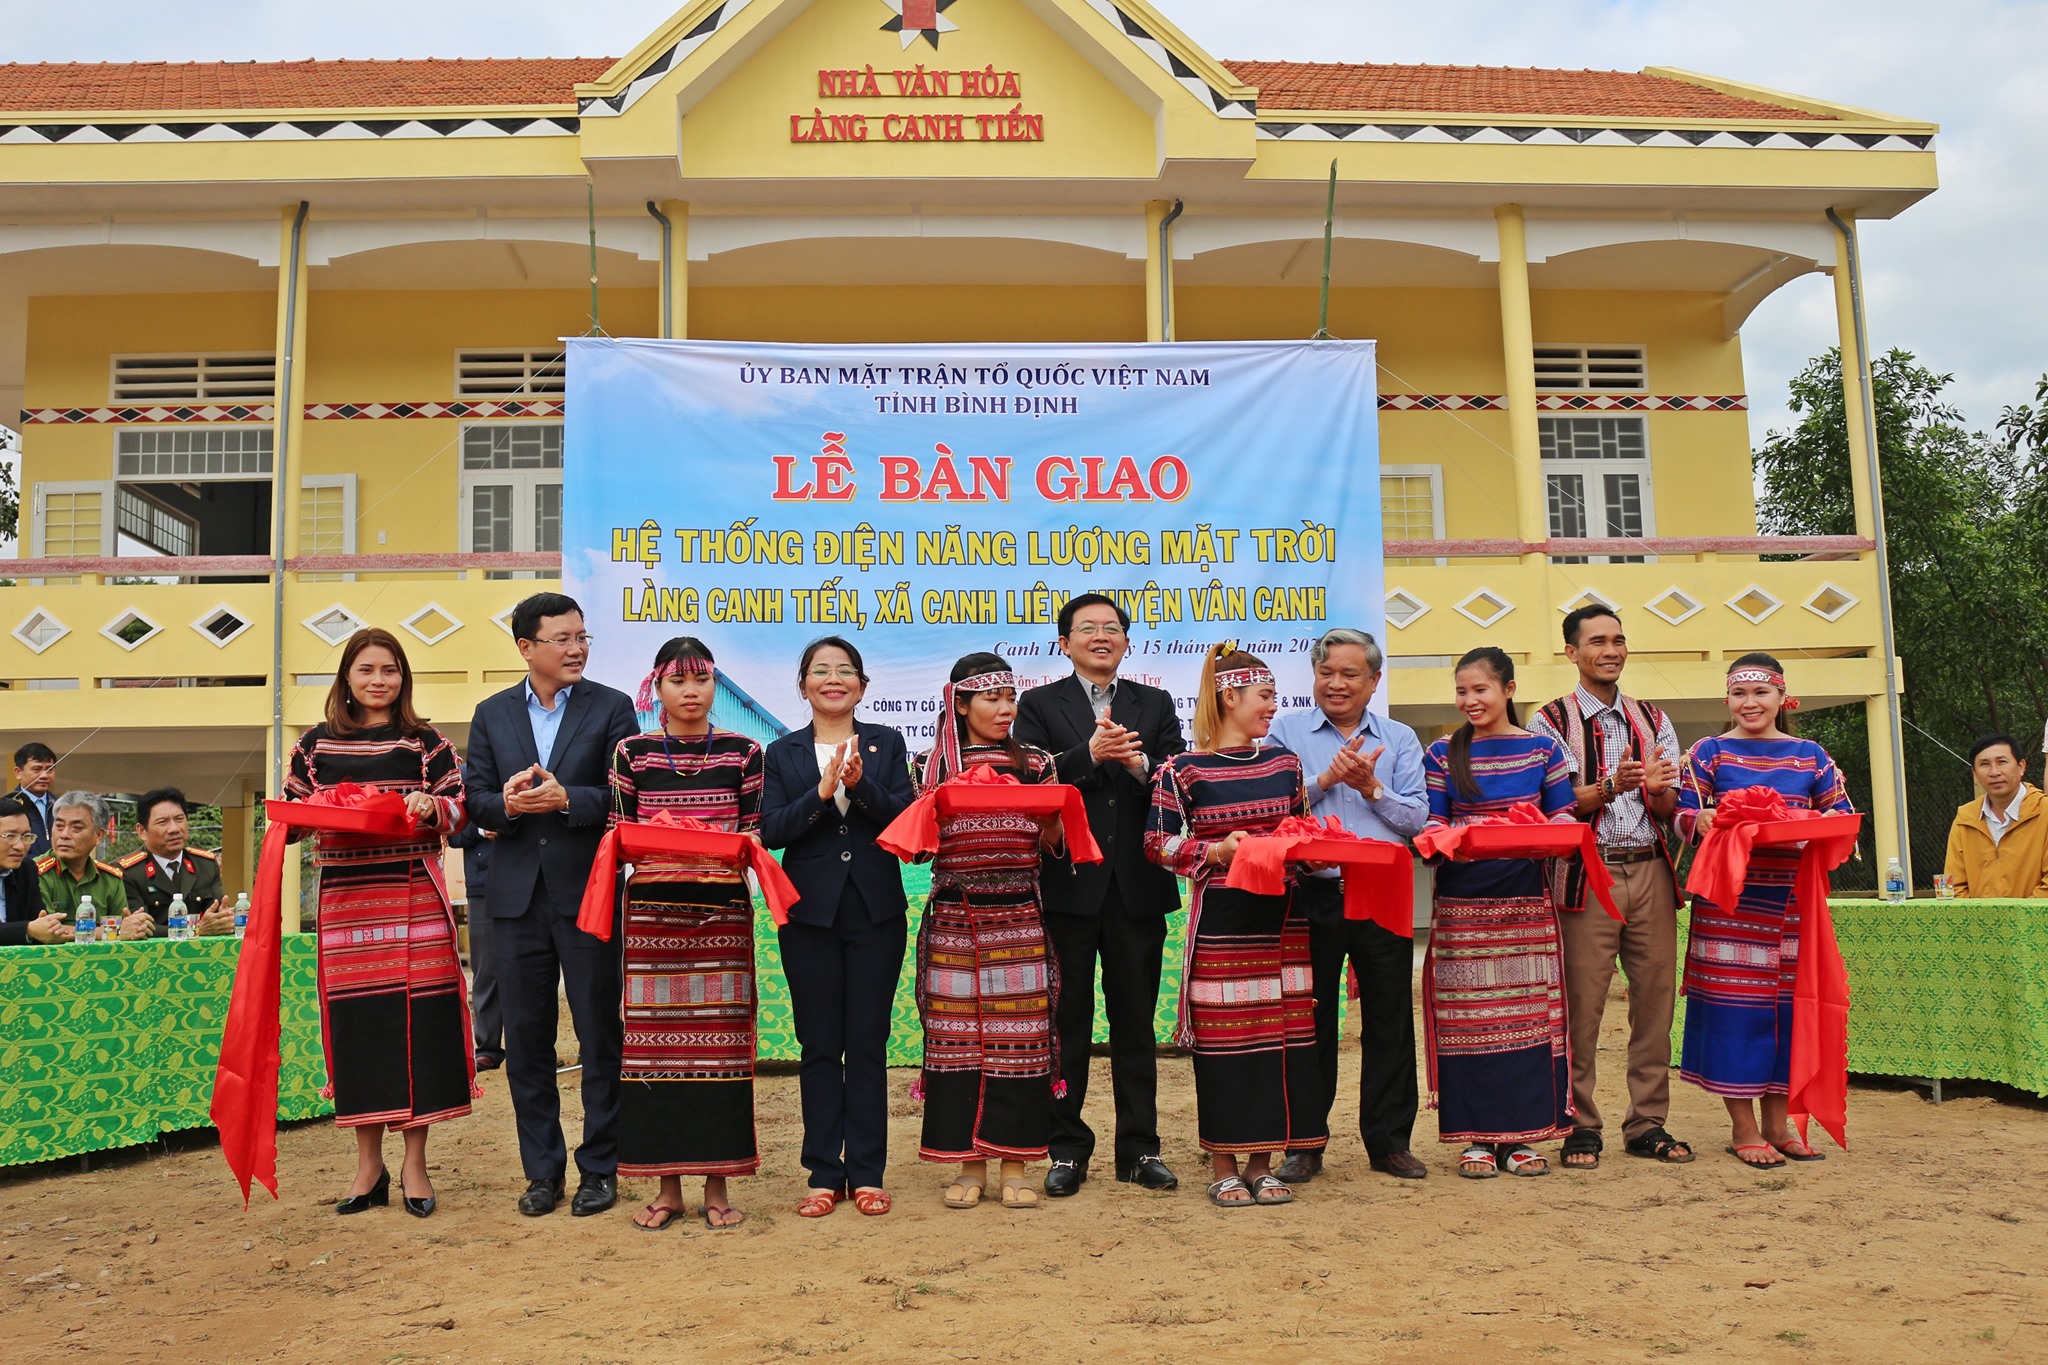 Lễ bàn giao hệ thống điện năng lượng mặt trời tại làng Canh Tiến, xã Canh Liên, huyện Vân Canh, tỉnh Bình Định